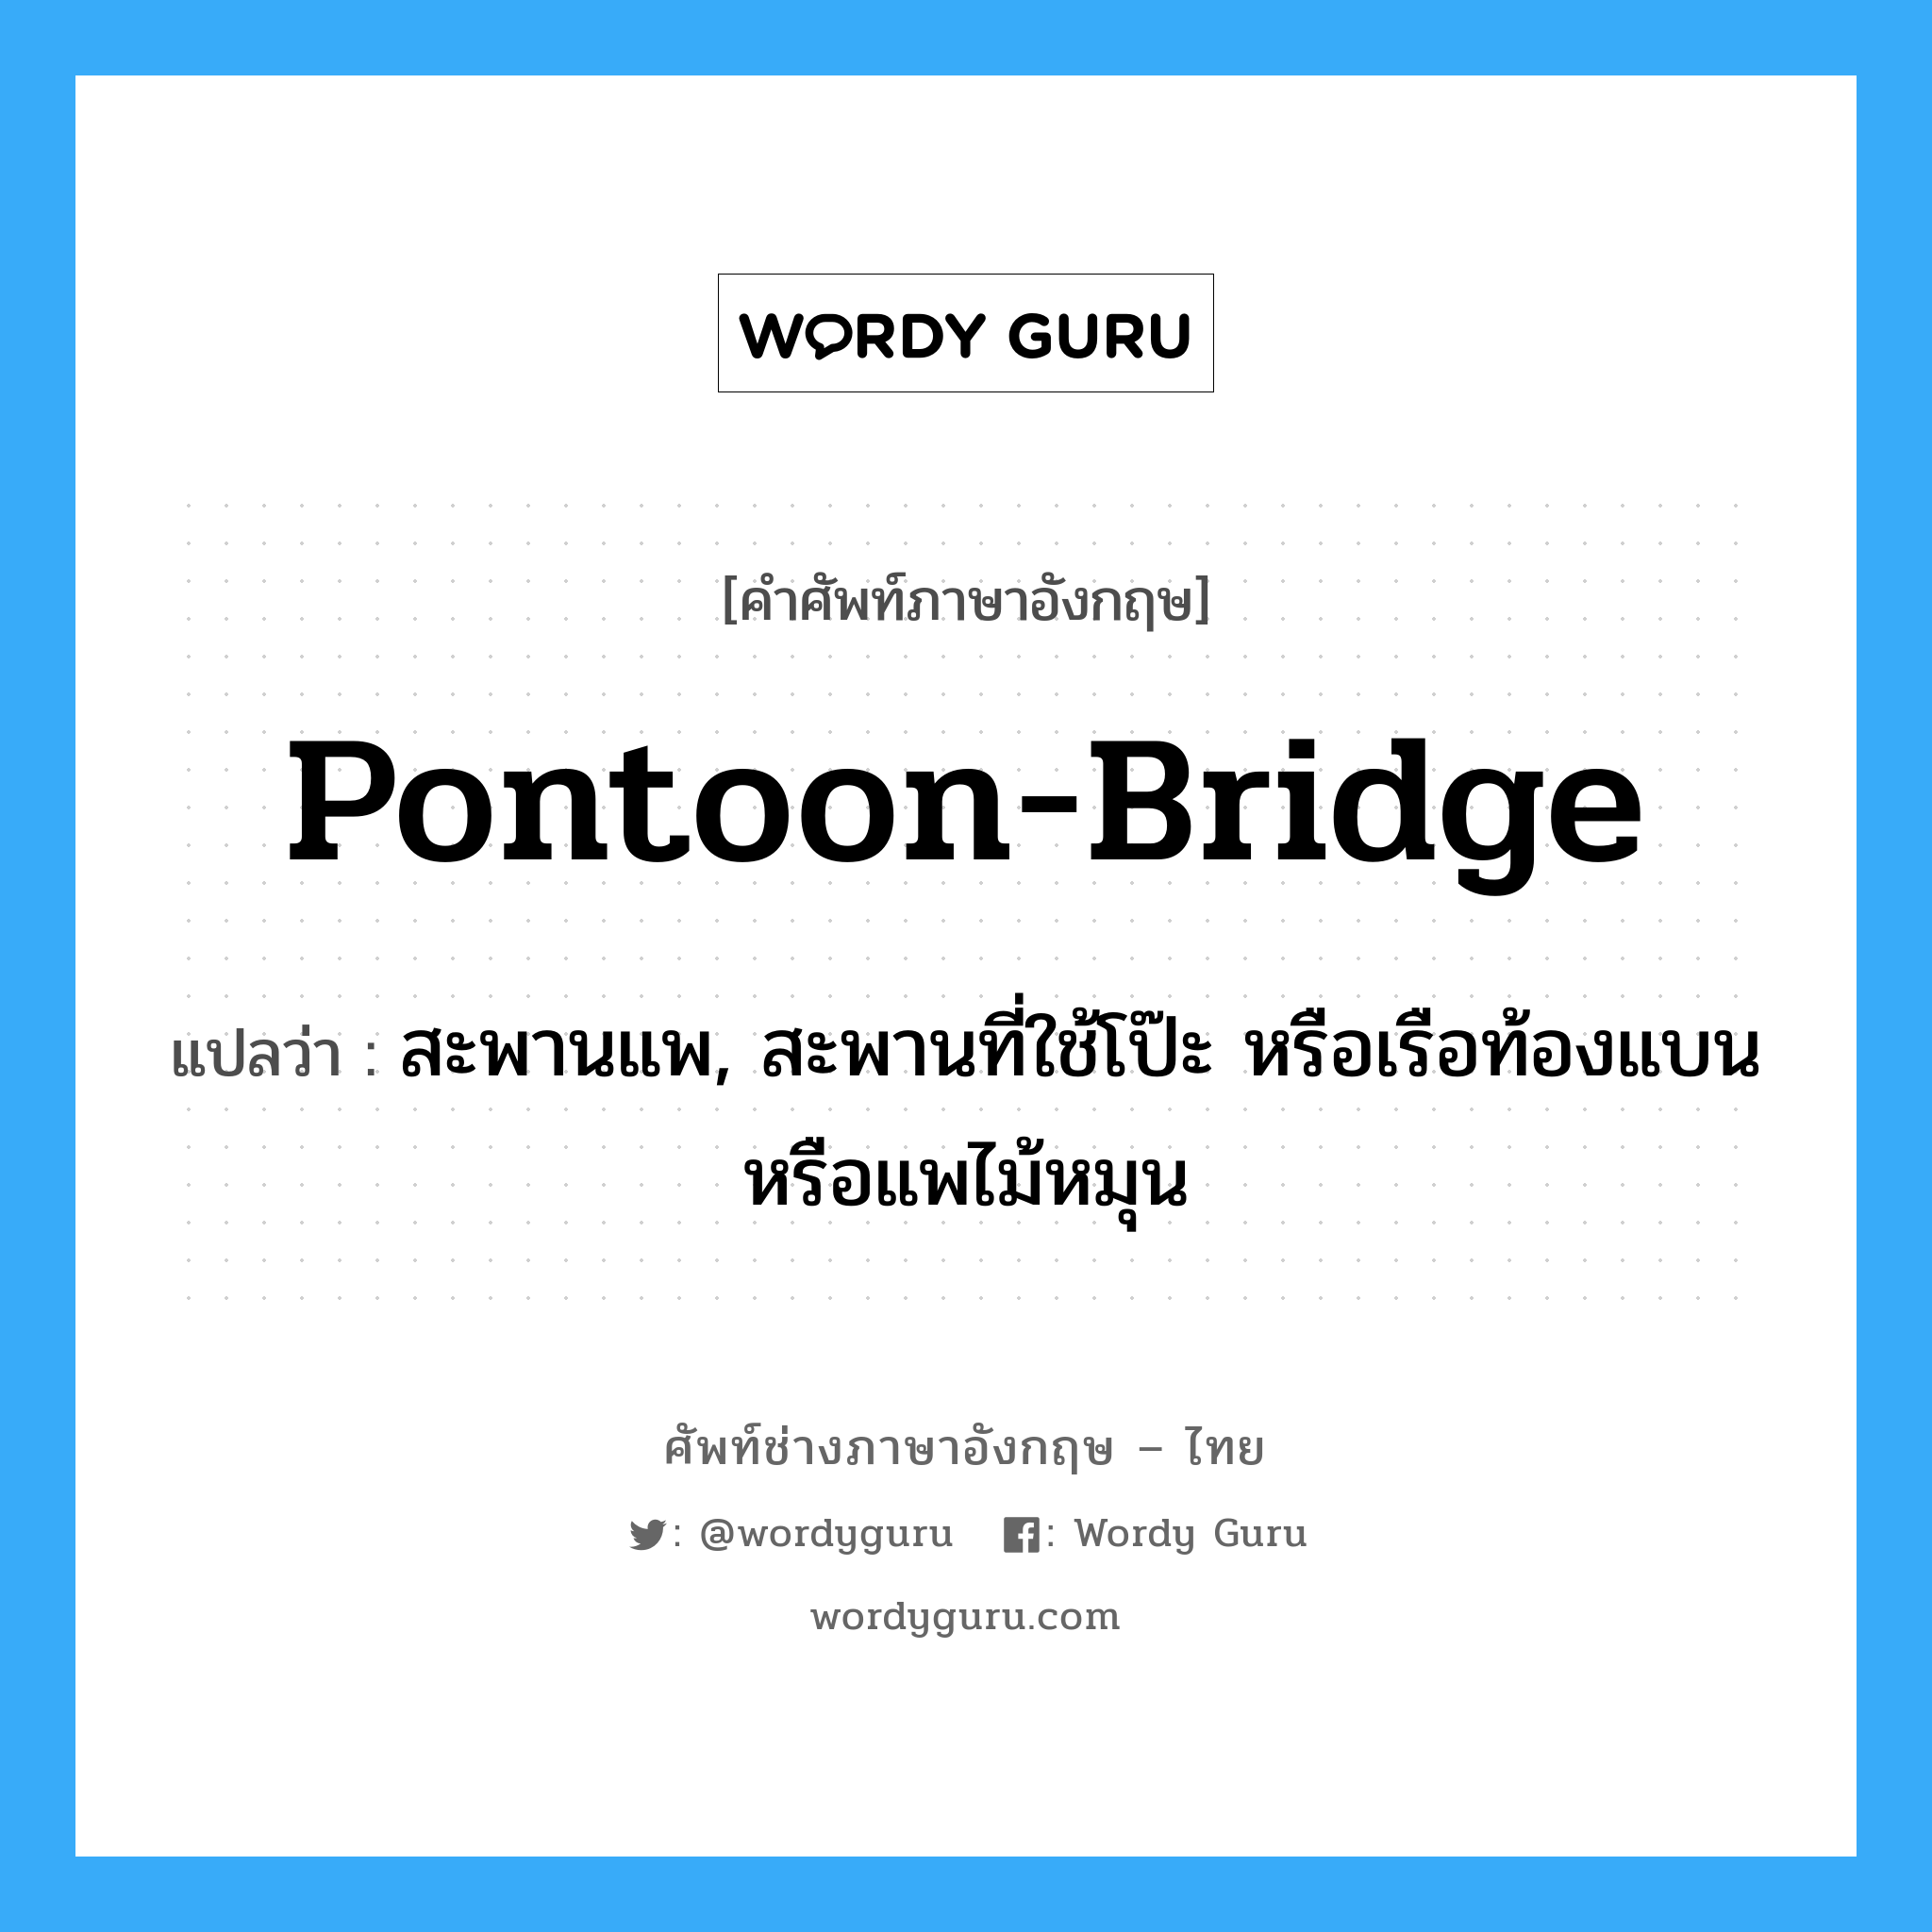 pontoon bridge แปลว่า?, คำศัพท์ช่างภาษาอังกฤษ - ไทย pontoon-bridge คำศัพท์ภาษาอังกฤษ pontoon-bridge แปลว่า สะพานแพ, สะพานที่ใช้โป๊ะ หรือเรือท้องแบน หรือแพไม้หมุน